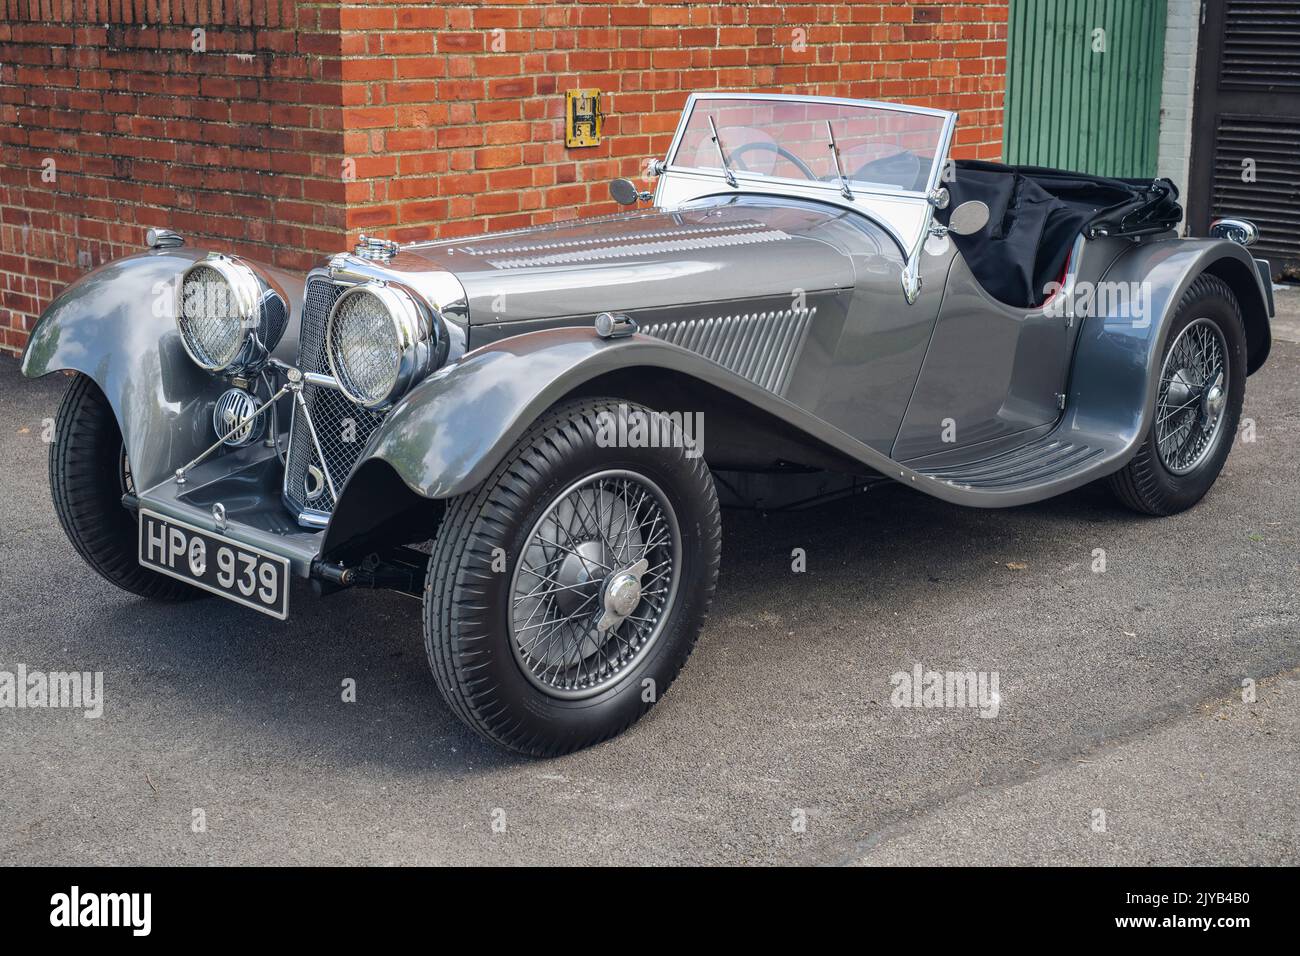 1938 SS Jaguar 2 1:2 L voiture de sport au Bicester Heritage Centre, événement du dimanche. Bicester, Oxfordshire, Angleterre Banque D'Images